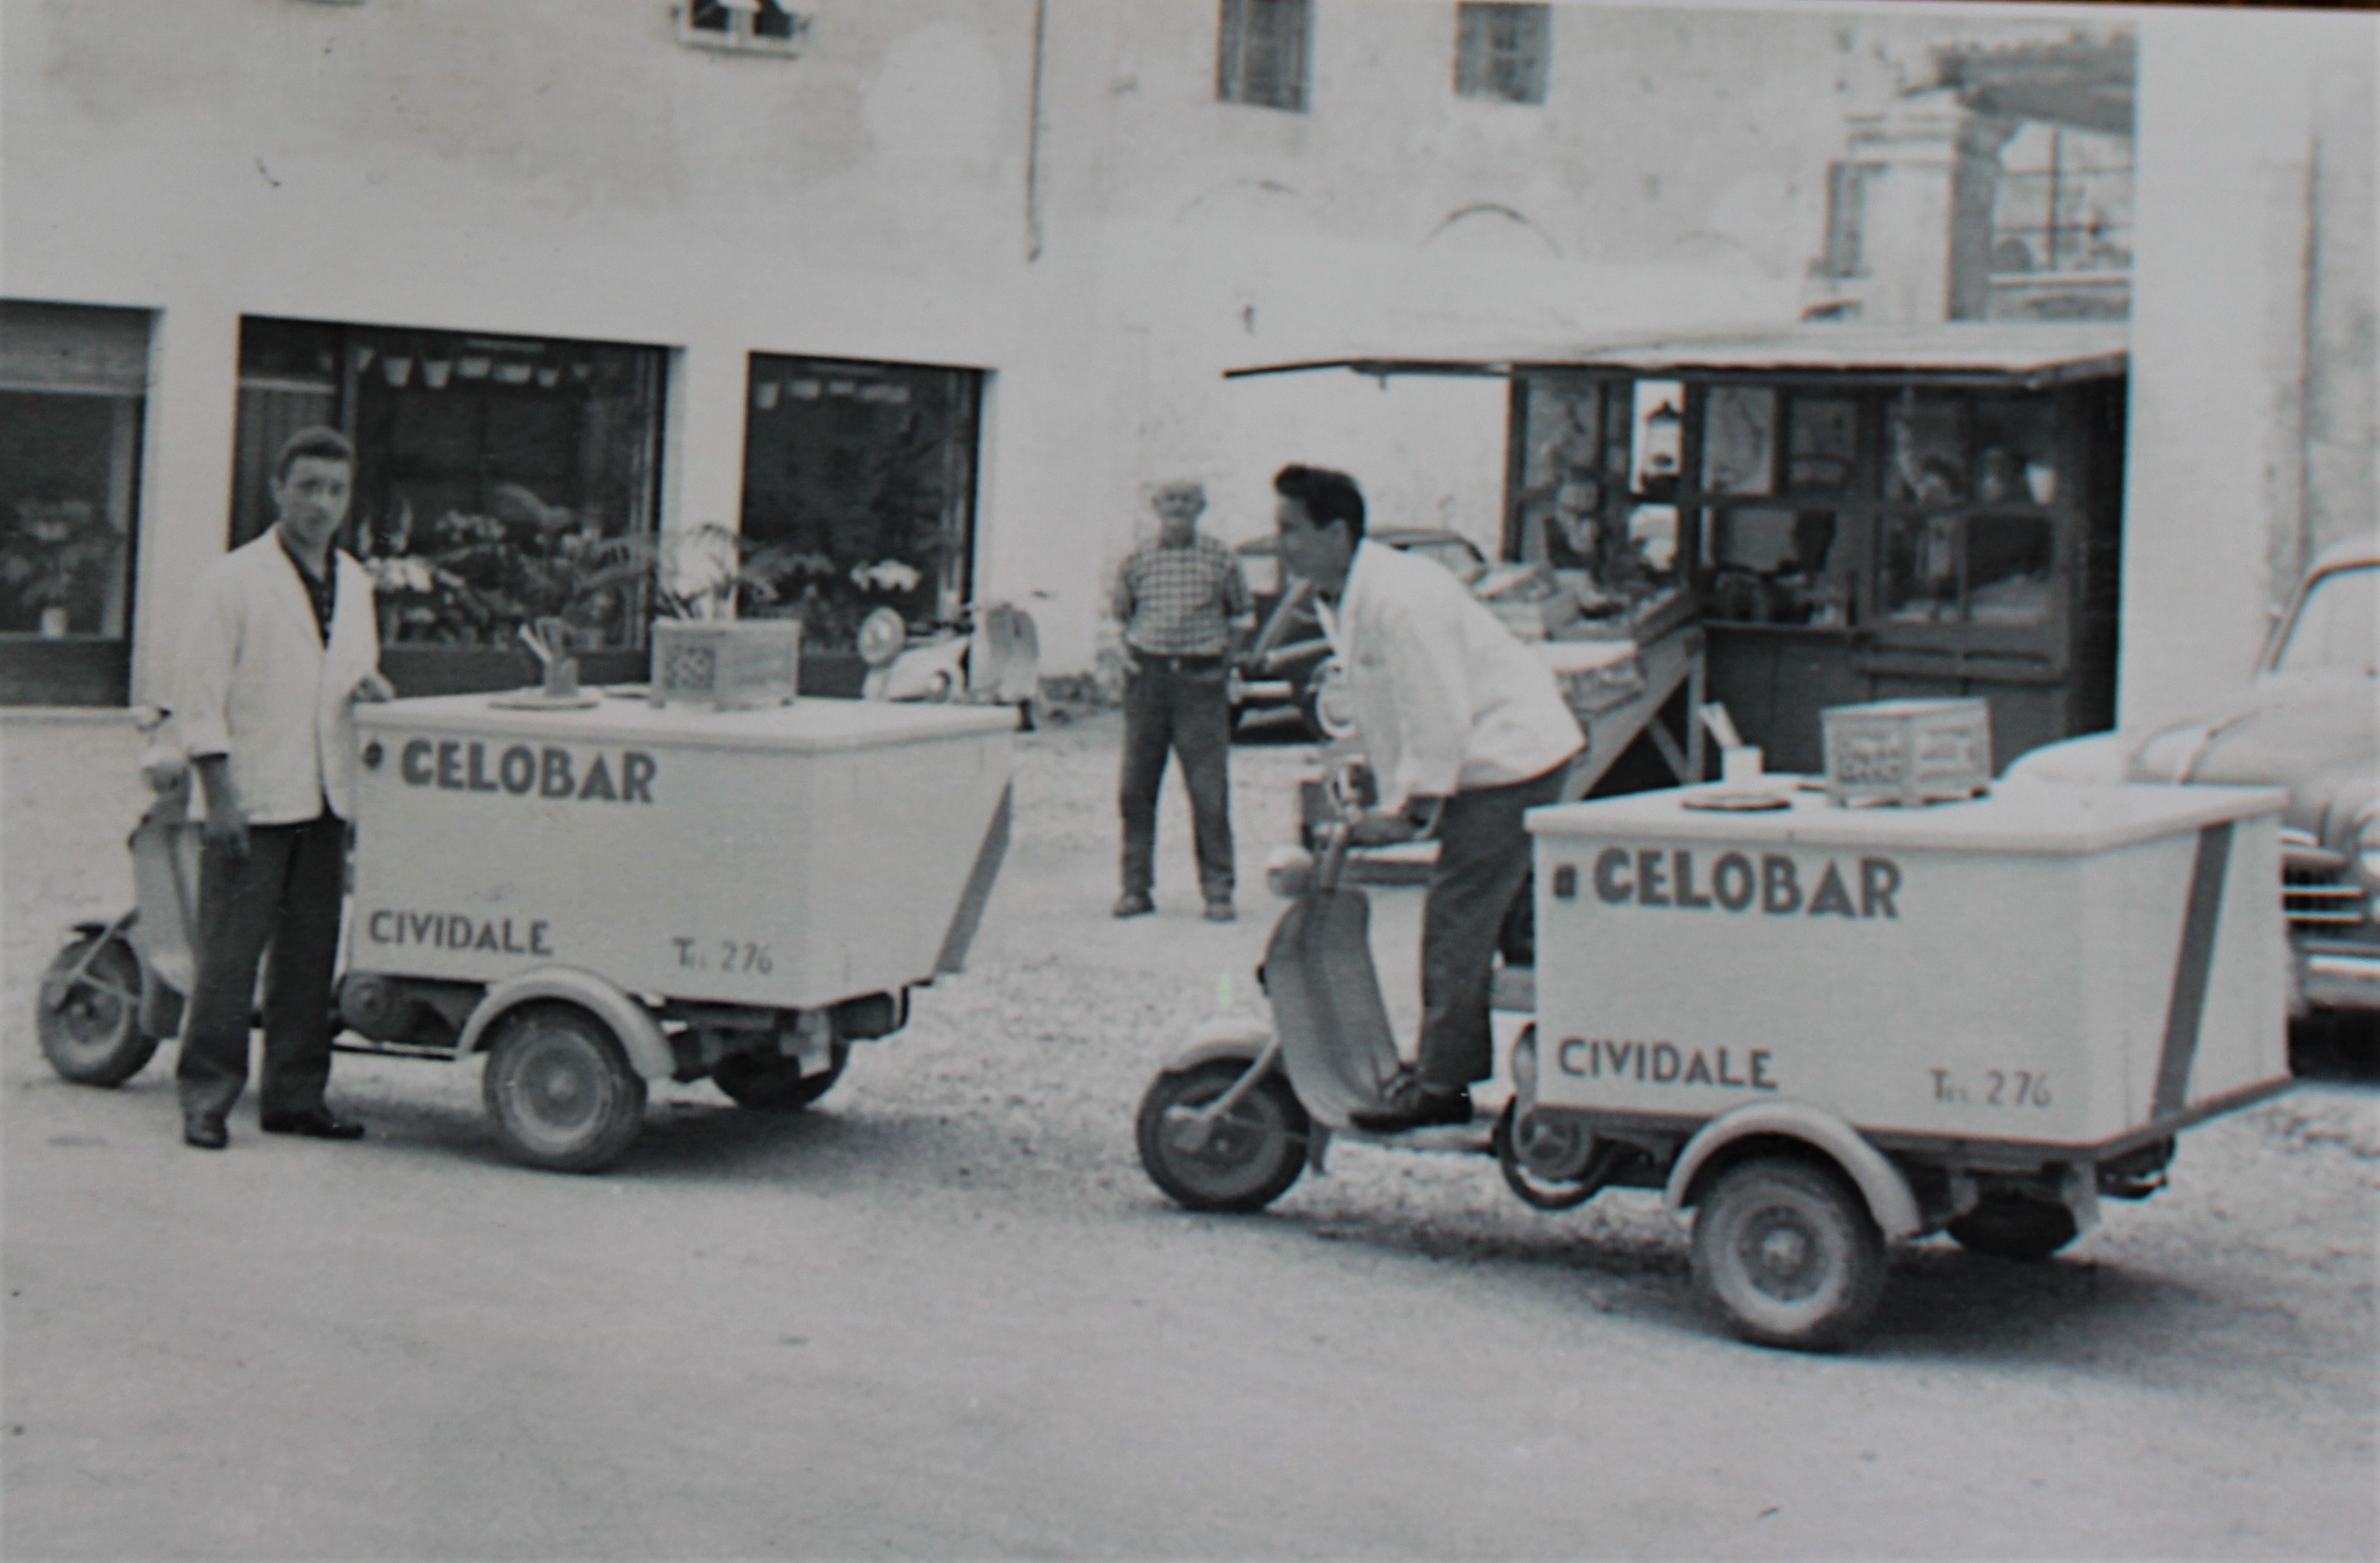 positivo, Gelatieri con carretti motorizzati a Cividale di Famiglia Gianfranco Lazzaris (XX)